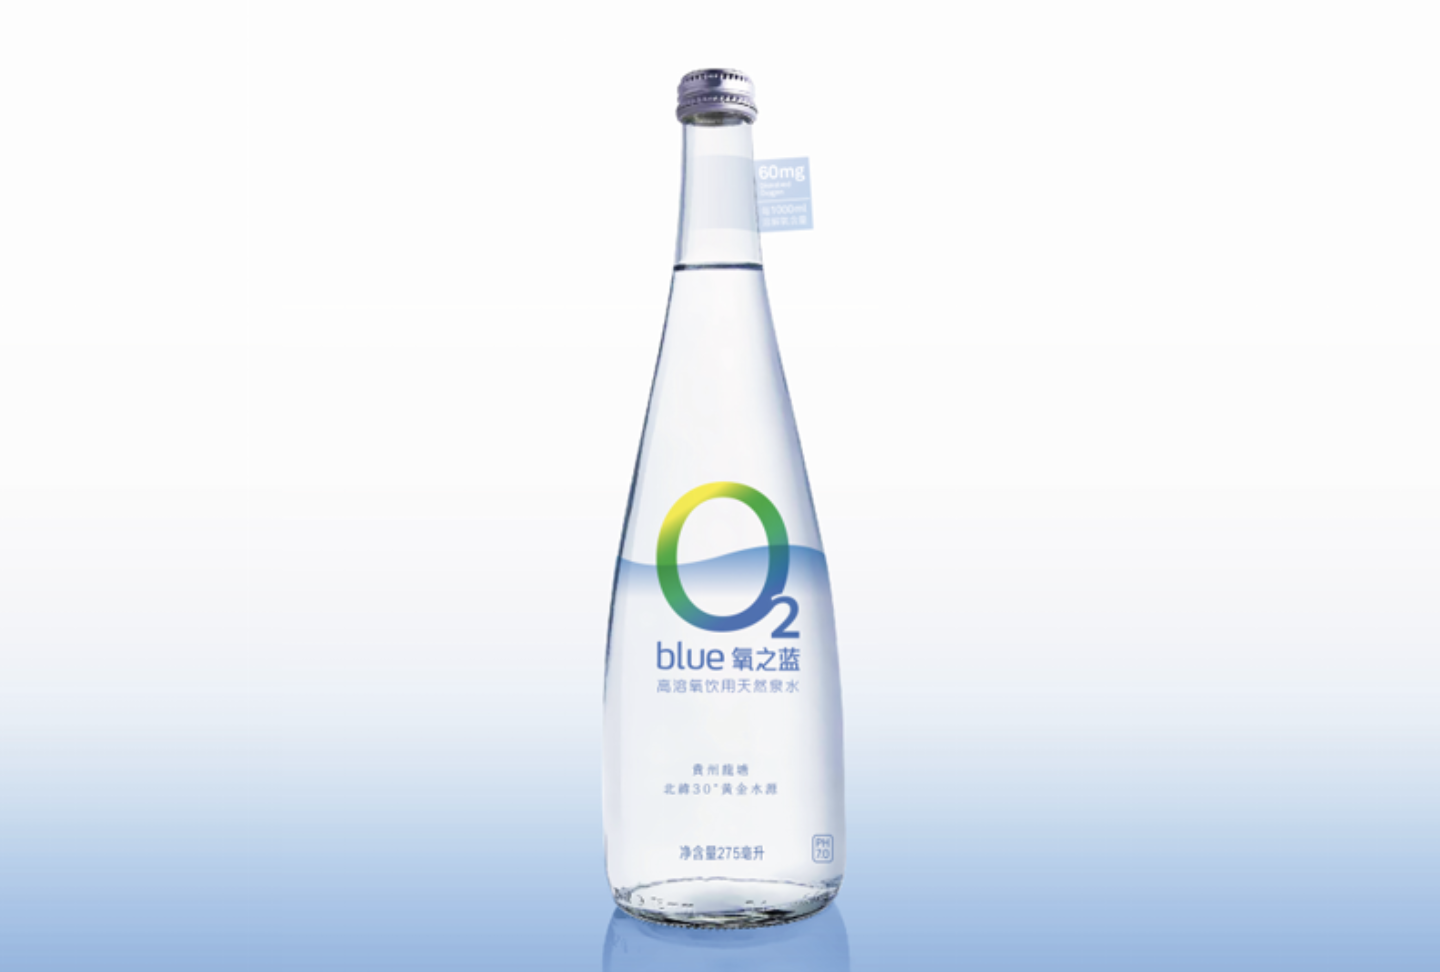 小眾健康水的品牌logo應該如何設計